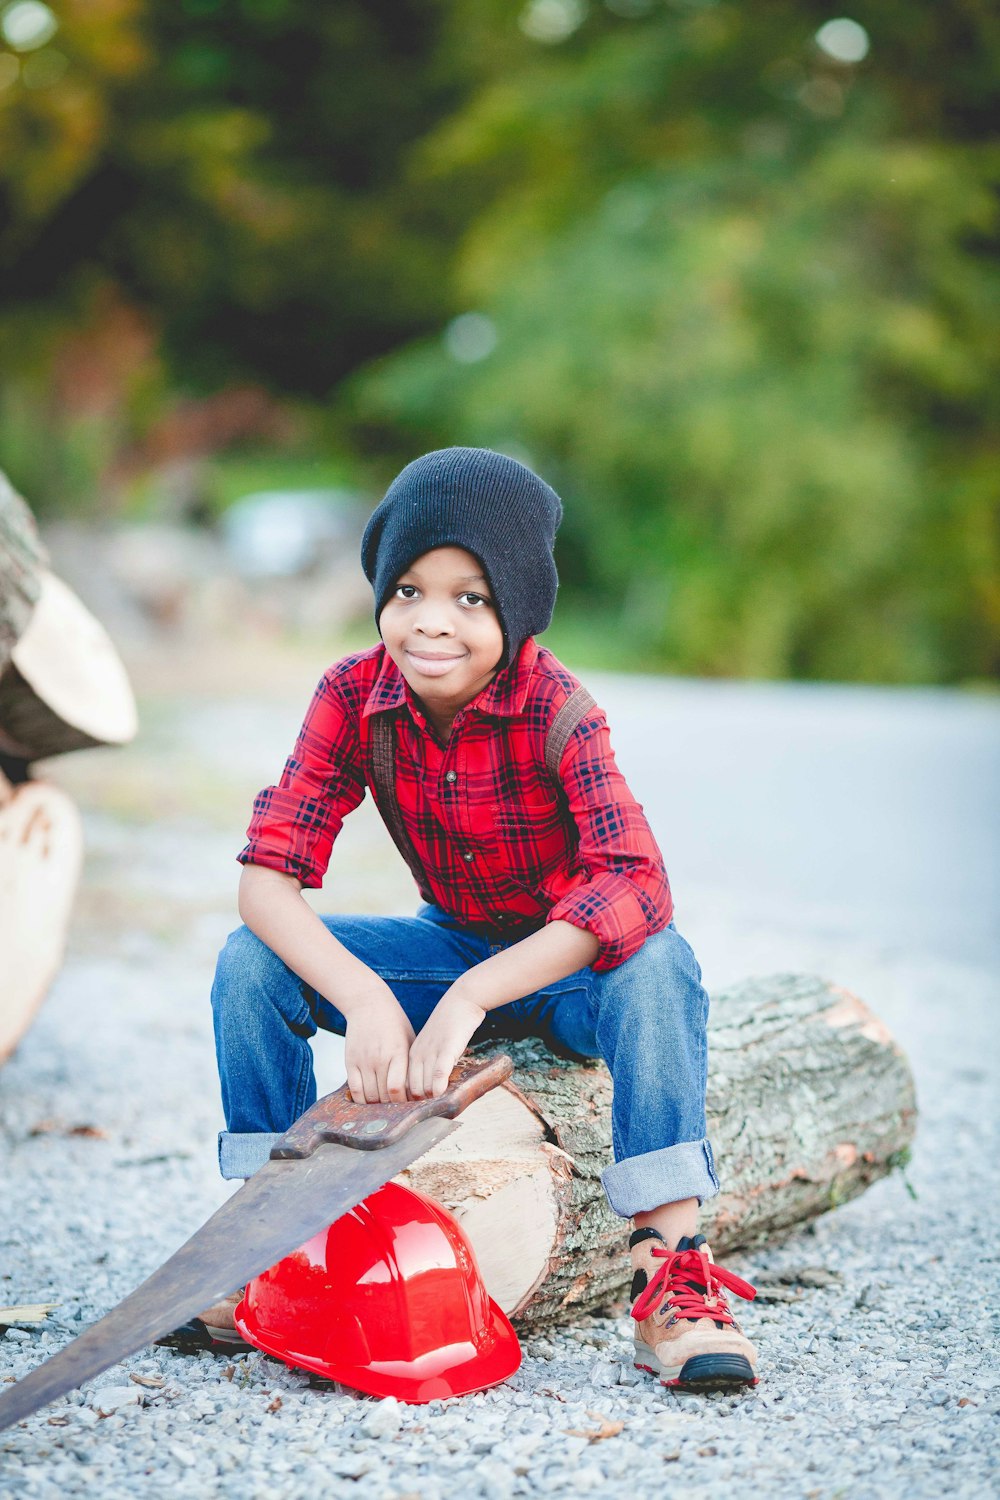 丸太の上に座り、赤いヘルメットの上に手のこぎりを持っている少年